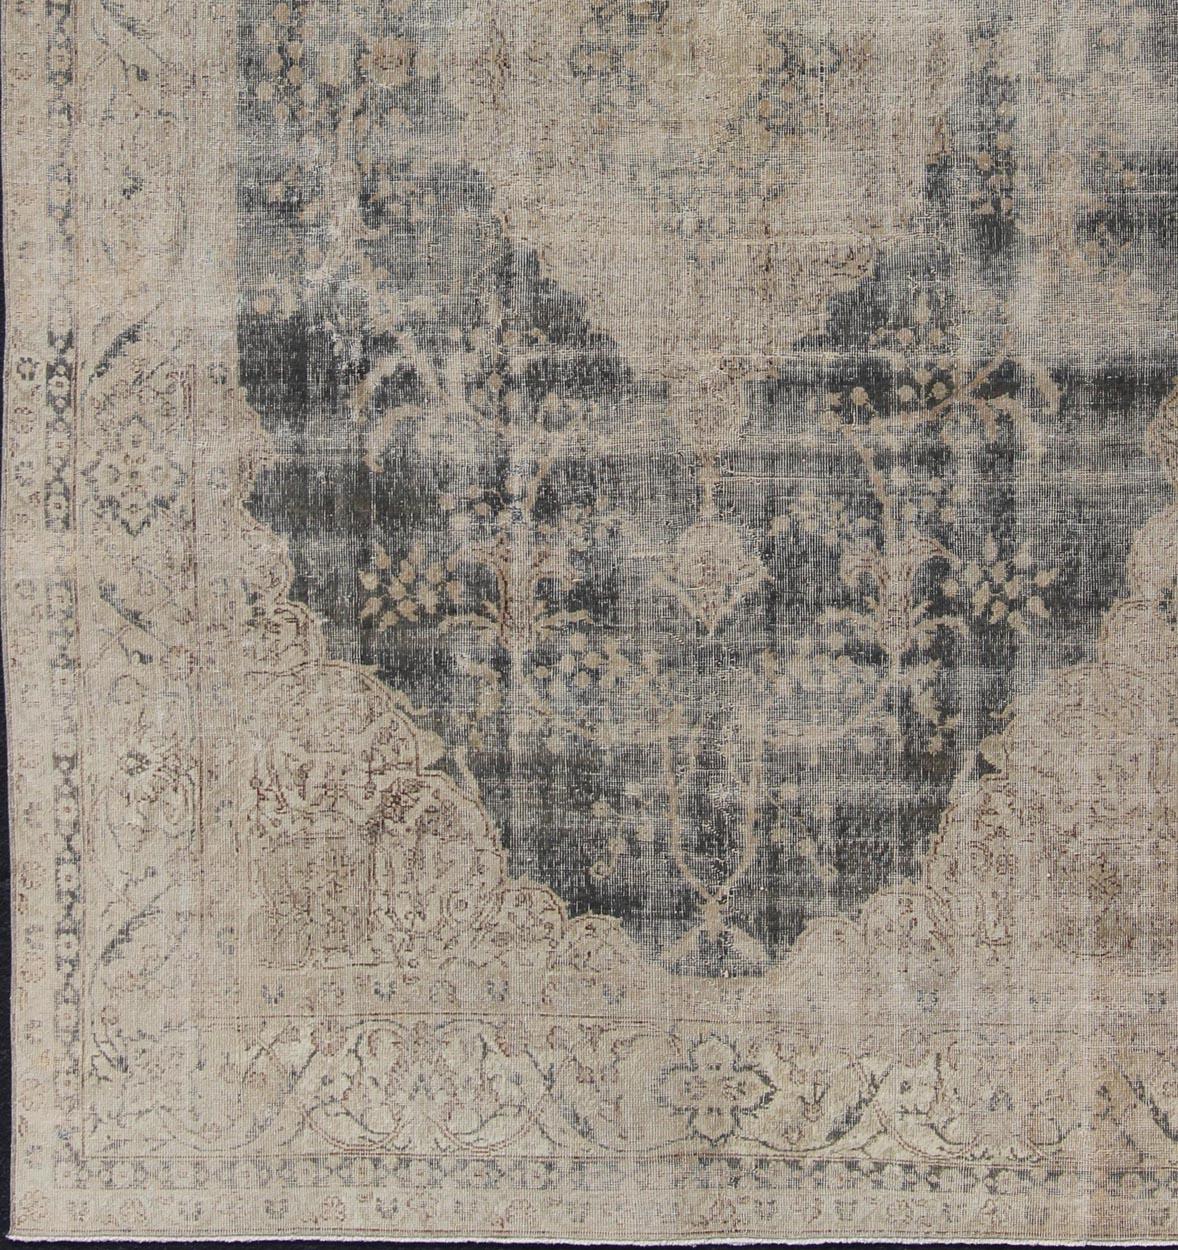  Türkischer Vintage-Teppich in Taupe, Dunkelgrau, Tan und Charcoal   kwarugs/ EN-179638. Türkischer Distressed-Teppich.
Dieser alte türkische Teppich wurde neutralisiert, um verblasste Pigmente mit einem floralen Muster zu erzeugen. Zu den neutralen